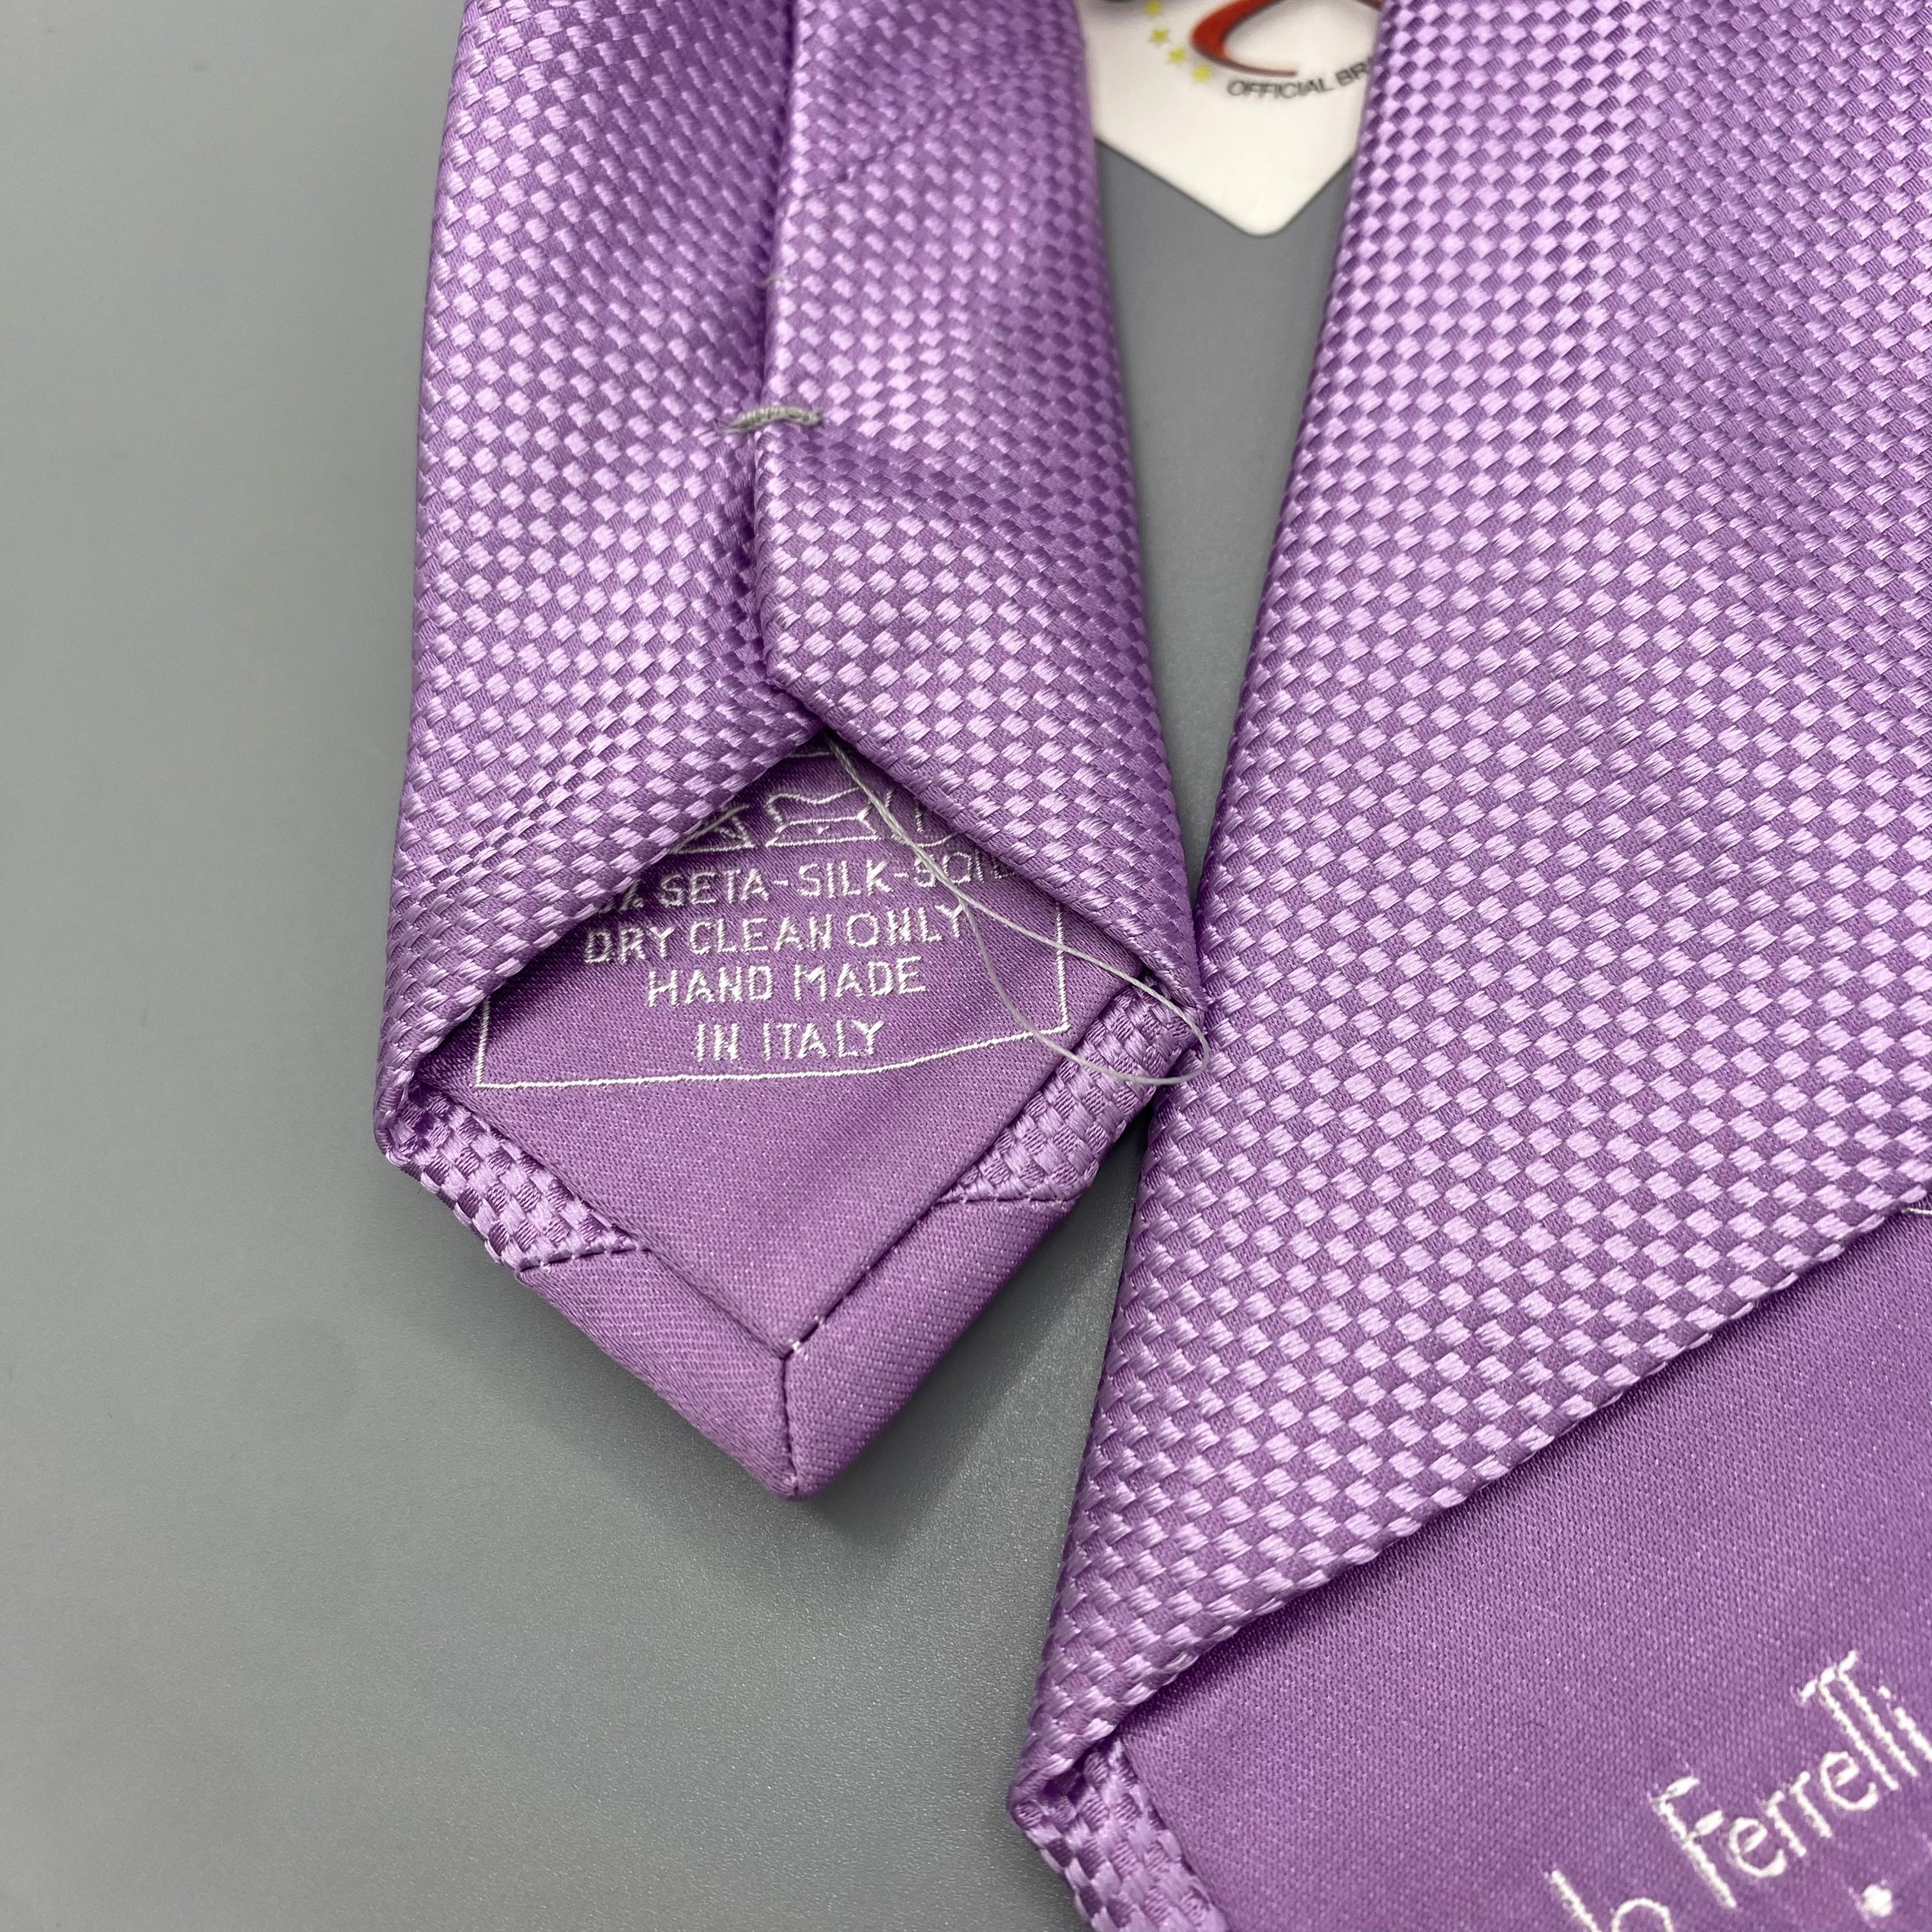 Cravate violette